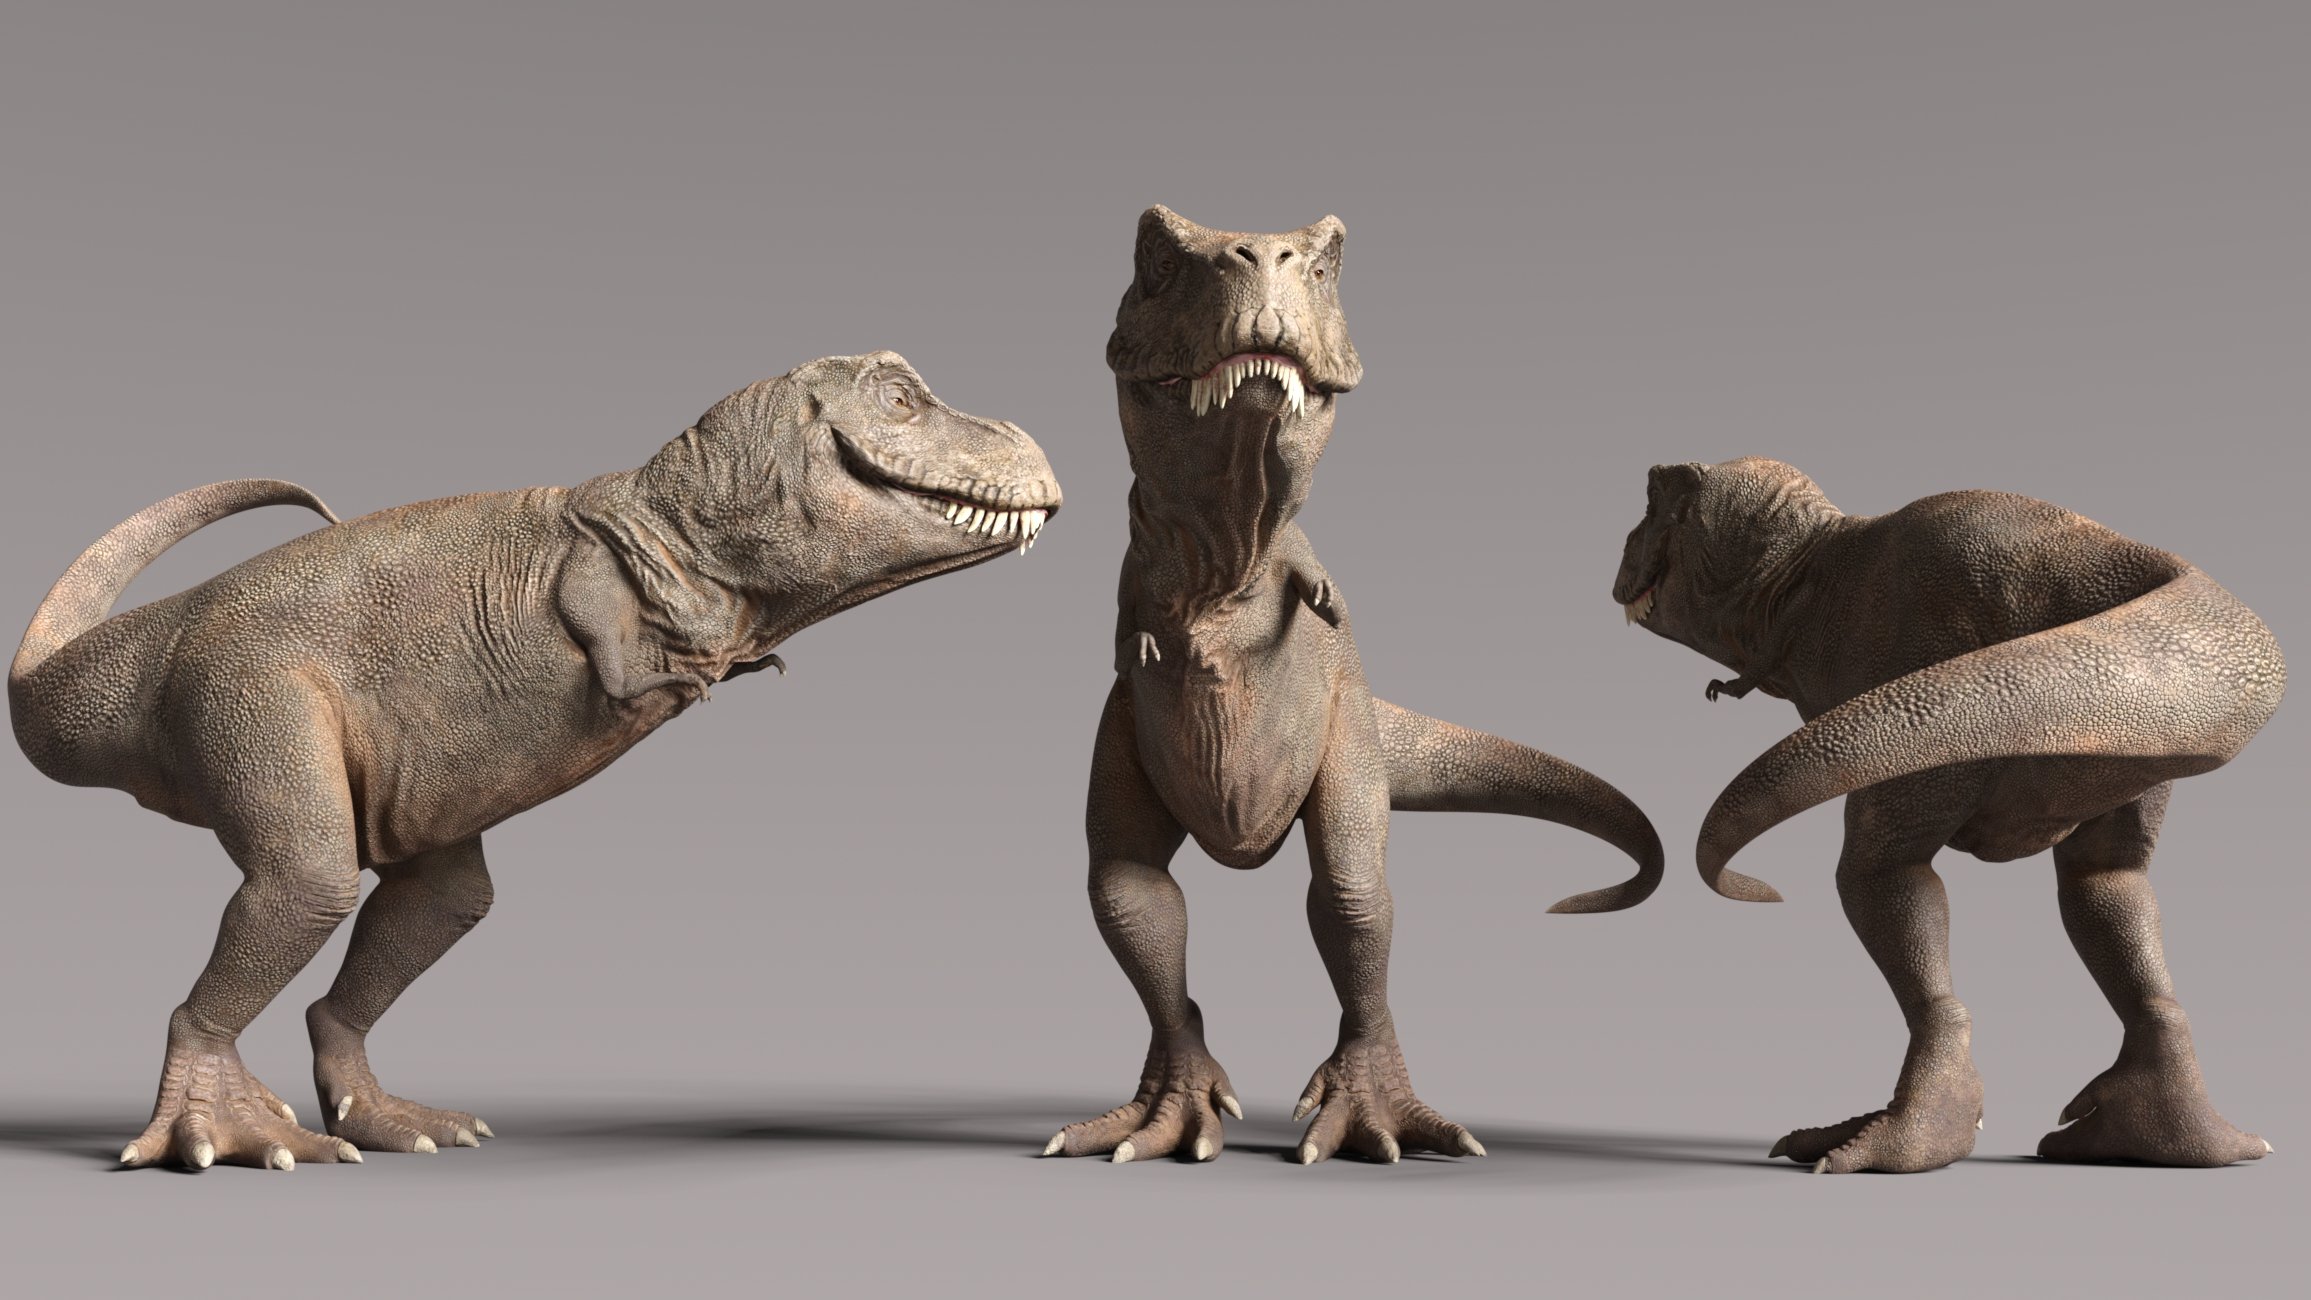 Rex HD for Genesis 8.1 Male by: JoeQuick, 3D Models by Daz 3D